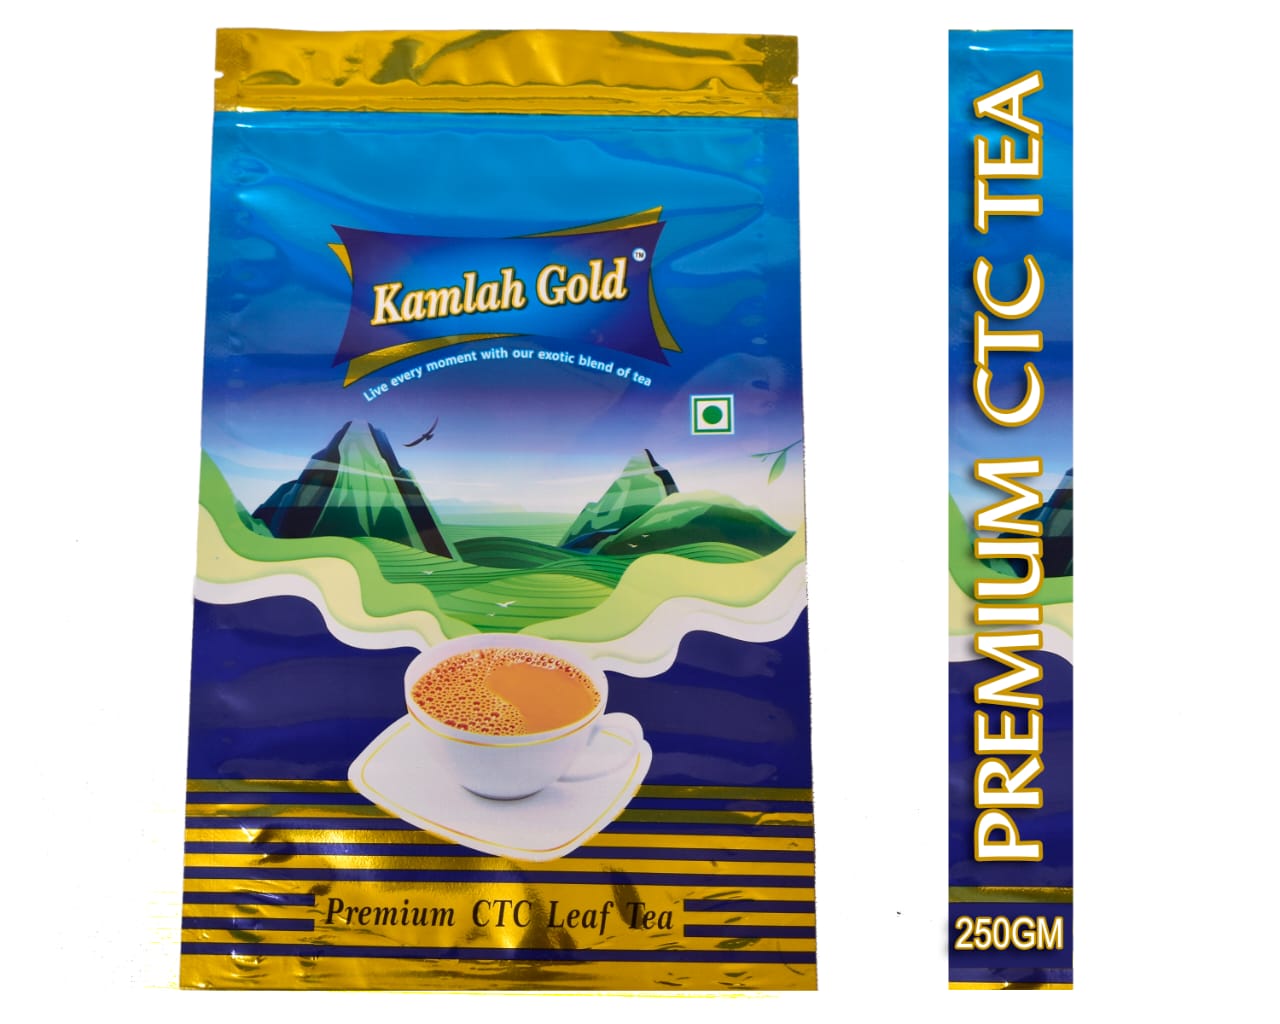 Kamlah Gold Premium CTC Tea